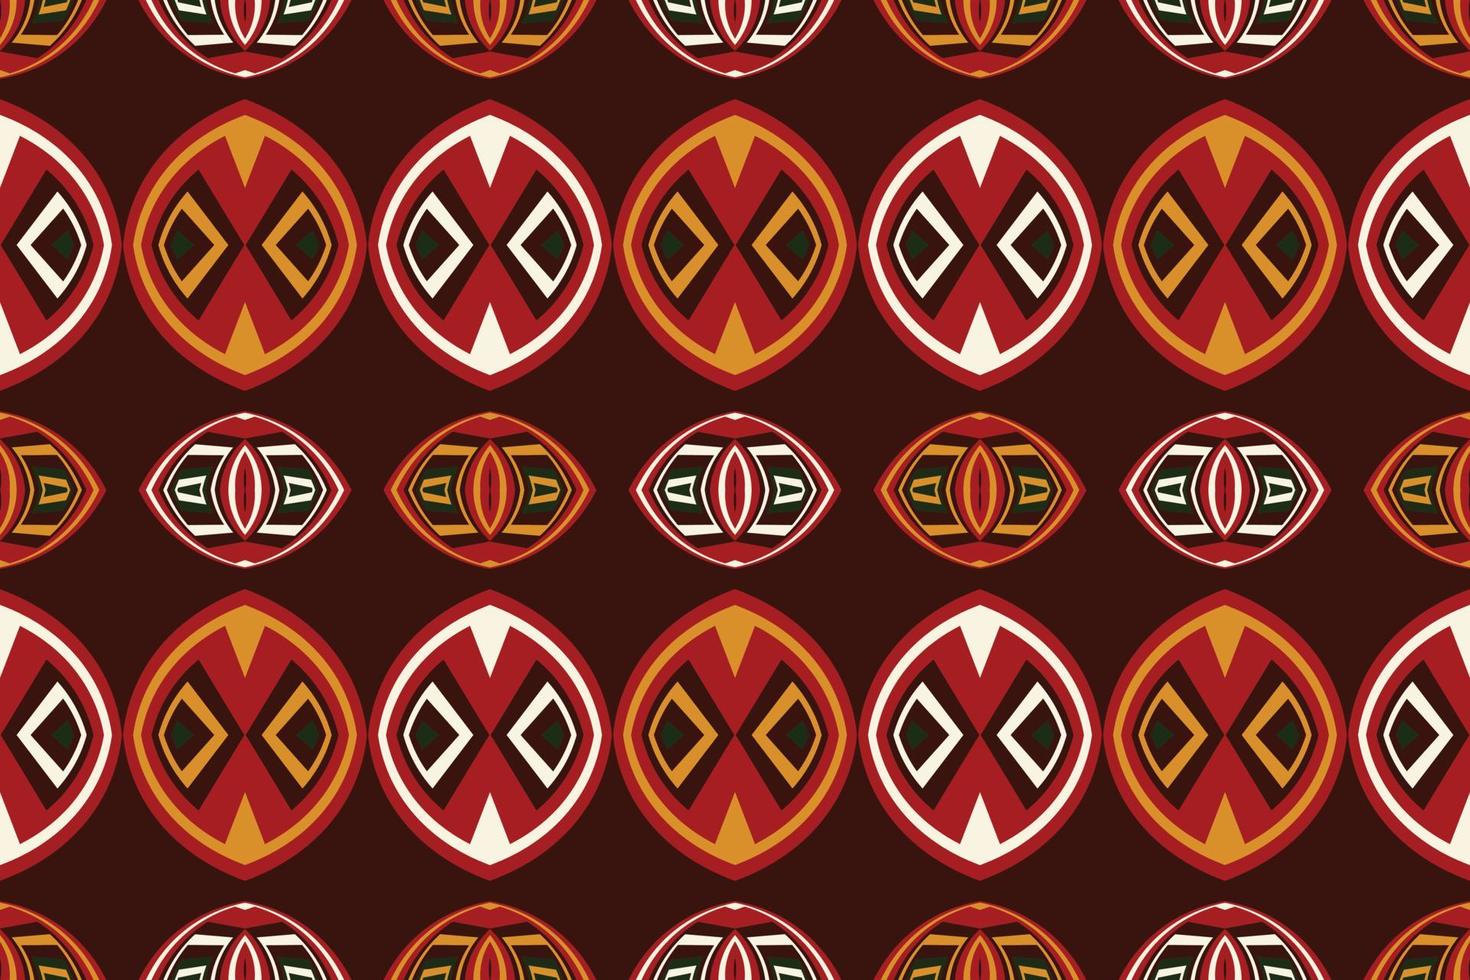 tissu kente du ghana design oriental ethnique traditionnel pour le fond. broderie folklorique, indienne, scandinave, gitane, mexicaine, tapis africain, papier peint. vecteur